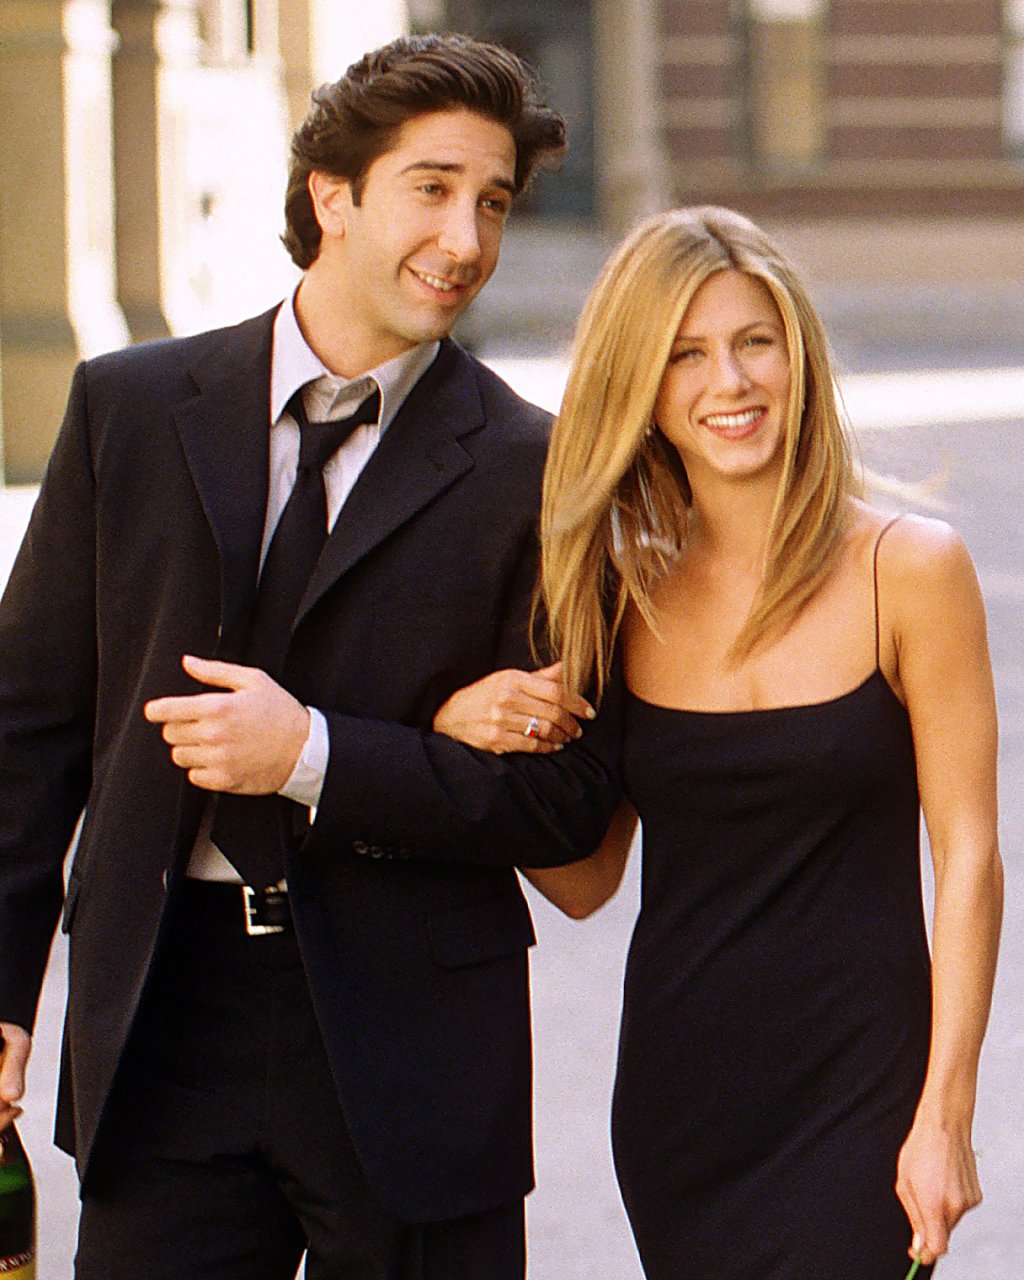 David Schwimmer e Jennifer Aniston como Ross e Rachel em Friends; eles estão usando roupas pretas e Jen está com o braço entrelaçado com o de David; os dois estão sorrindo para enquanto andam